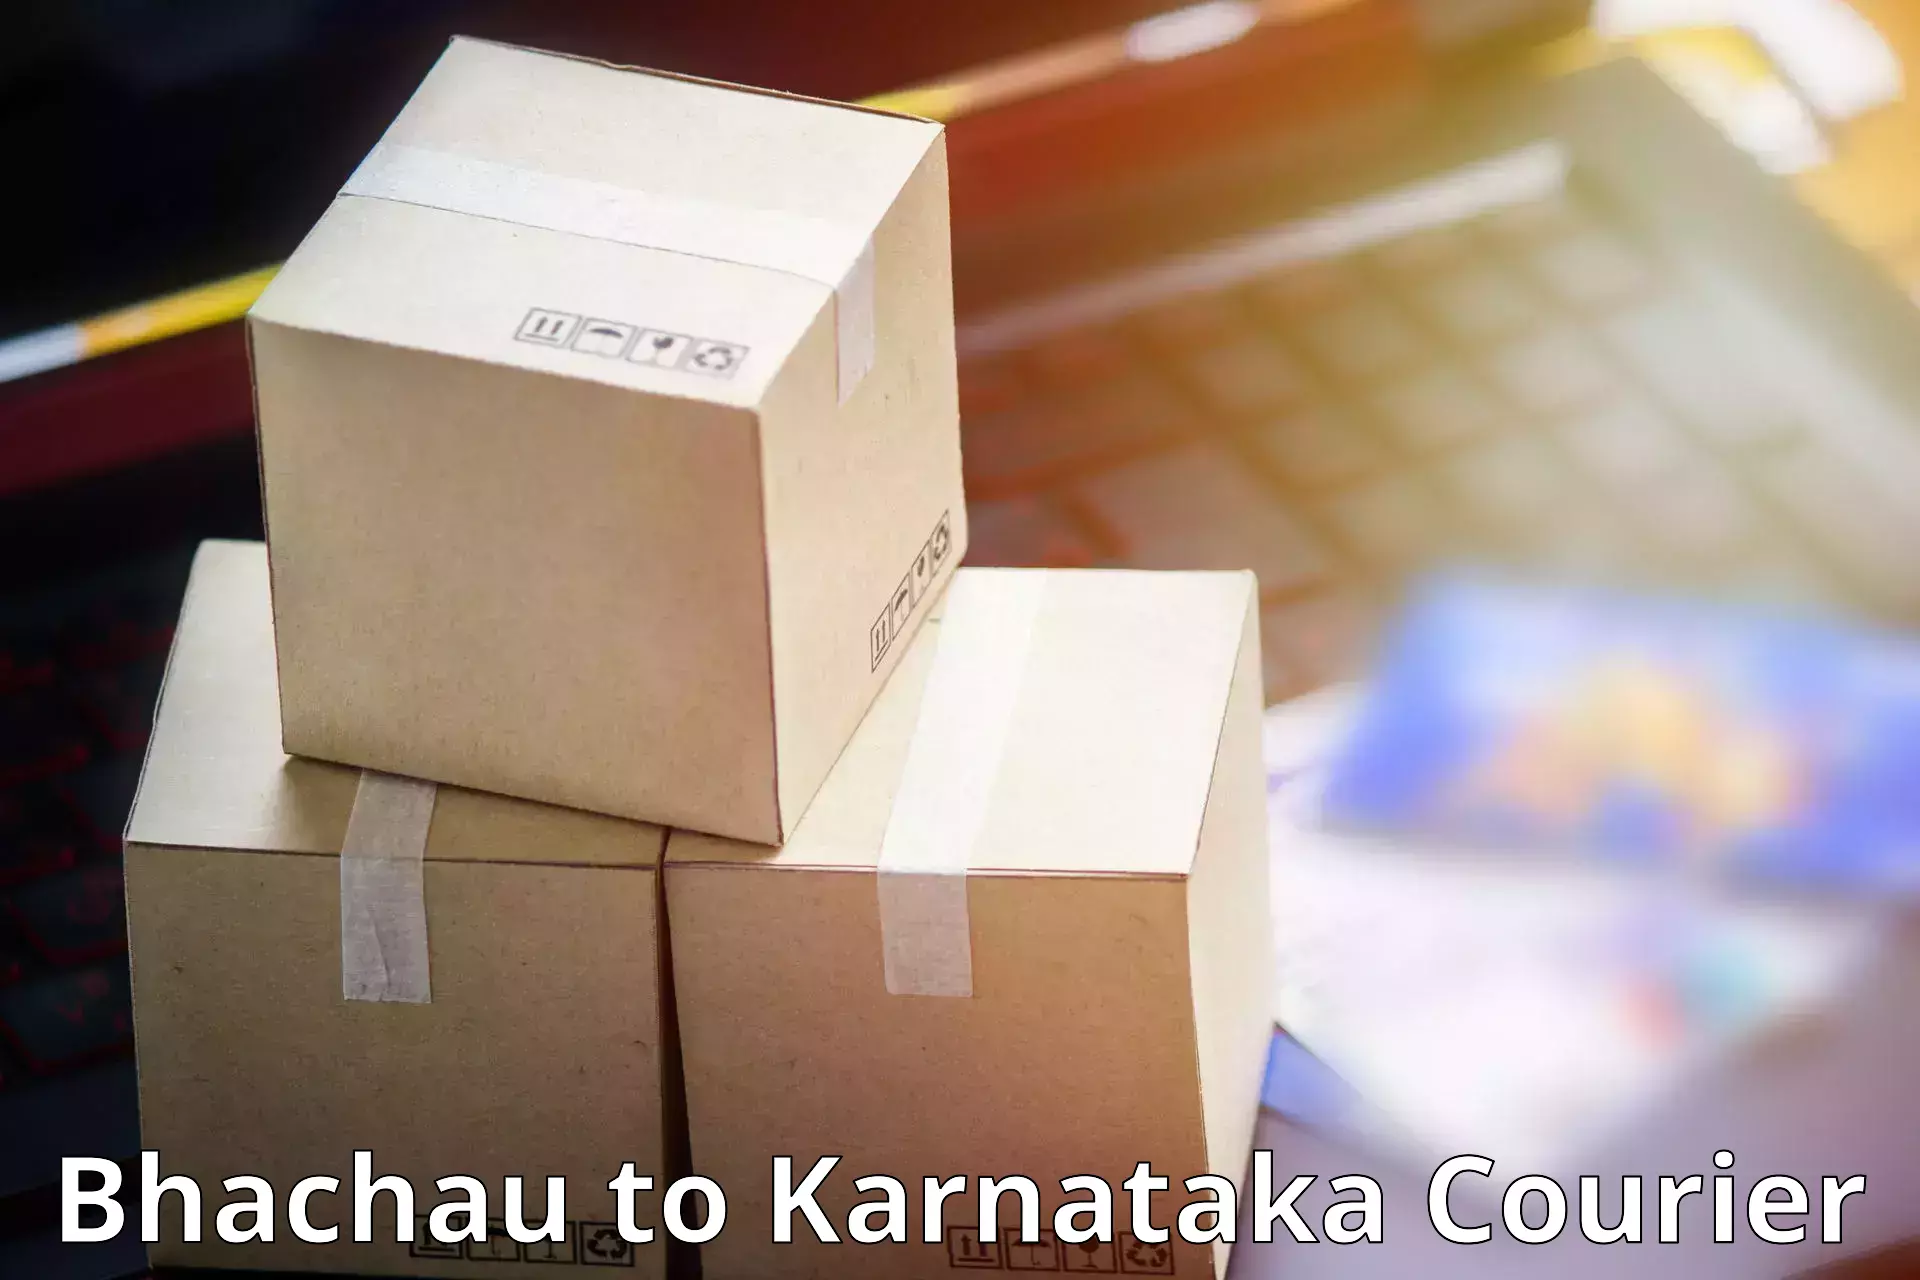 State-of-the-art courier technology Bhachau to Chikkanayakanahalli